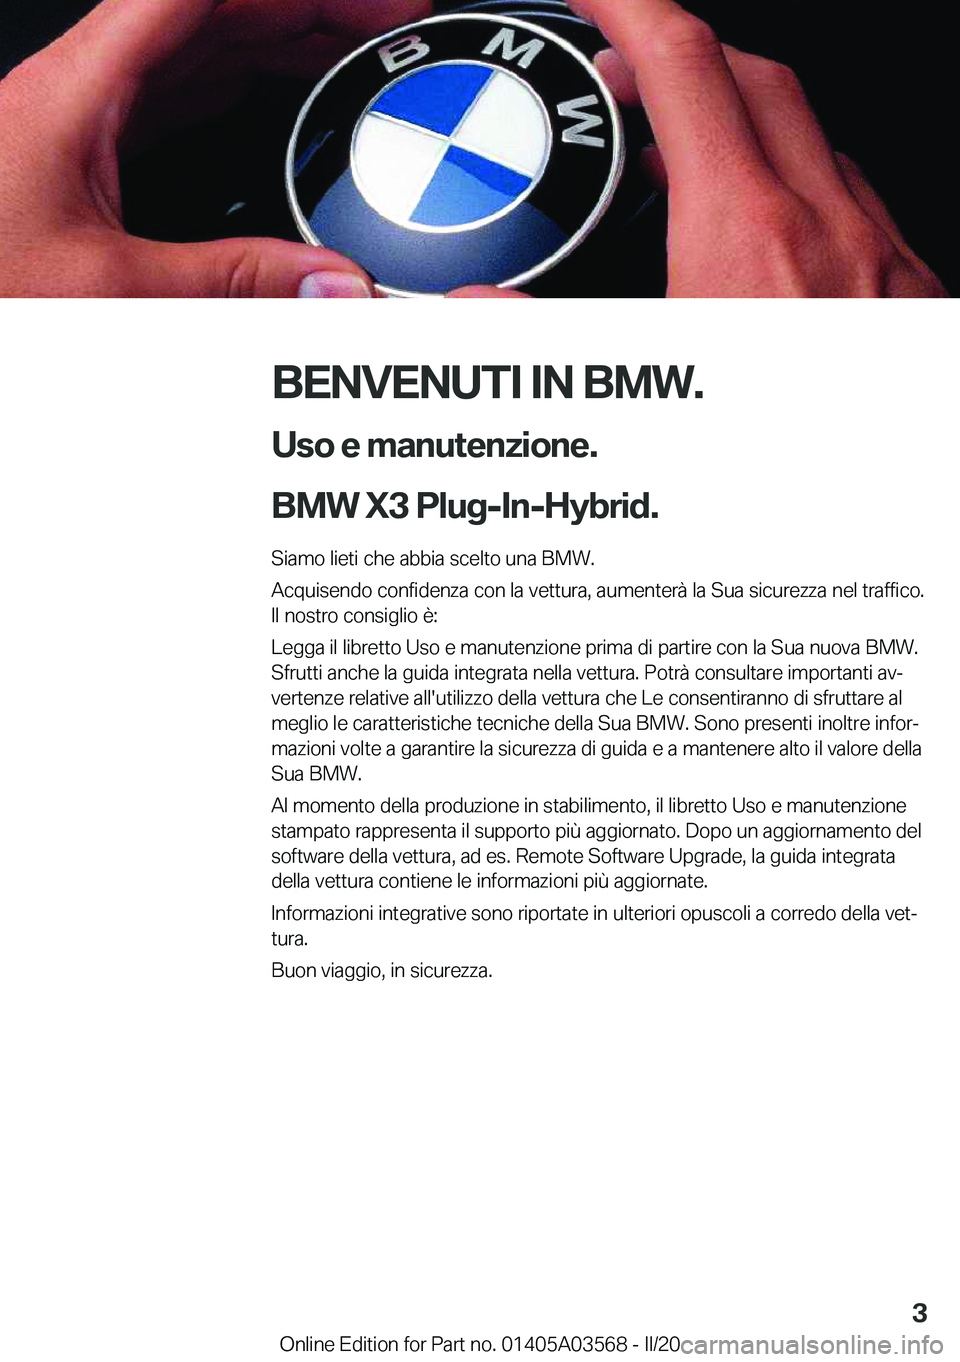 BMW X3 PLUG IN HYBRID 2020  Libretti Di Uso E manutenzione (in Italian) �B�E�N�V�E�N�U�T�I��I�N��B�M�W�.�U�s�o��e��m�a�n�u�t�e�n�z�i�o�n�e�.
�B�M�W��X�3��P�l�u�g�-�I�n�-�H�y�b�r�i�d�.
�S�i�a�m�o��l�i�e�t�i��c�h�e��a�b�b�i�a��s�c�e�l�t�o��u�n�a��B�M�W�.
�A�c�q�